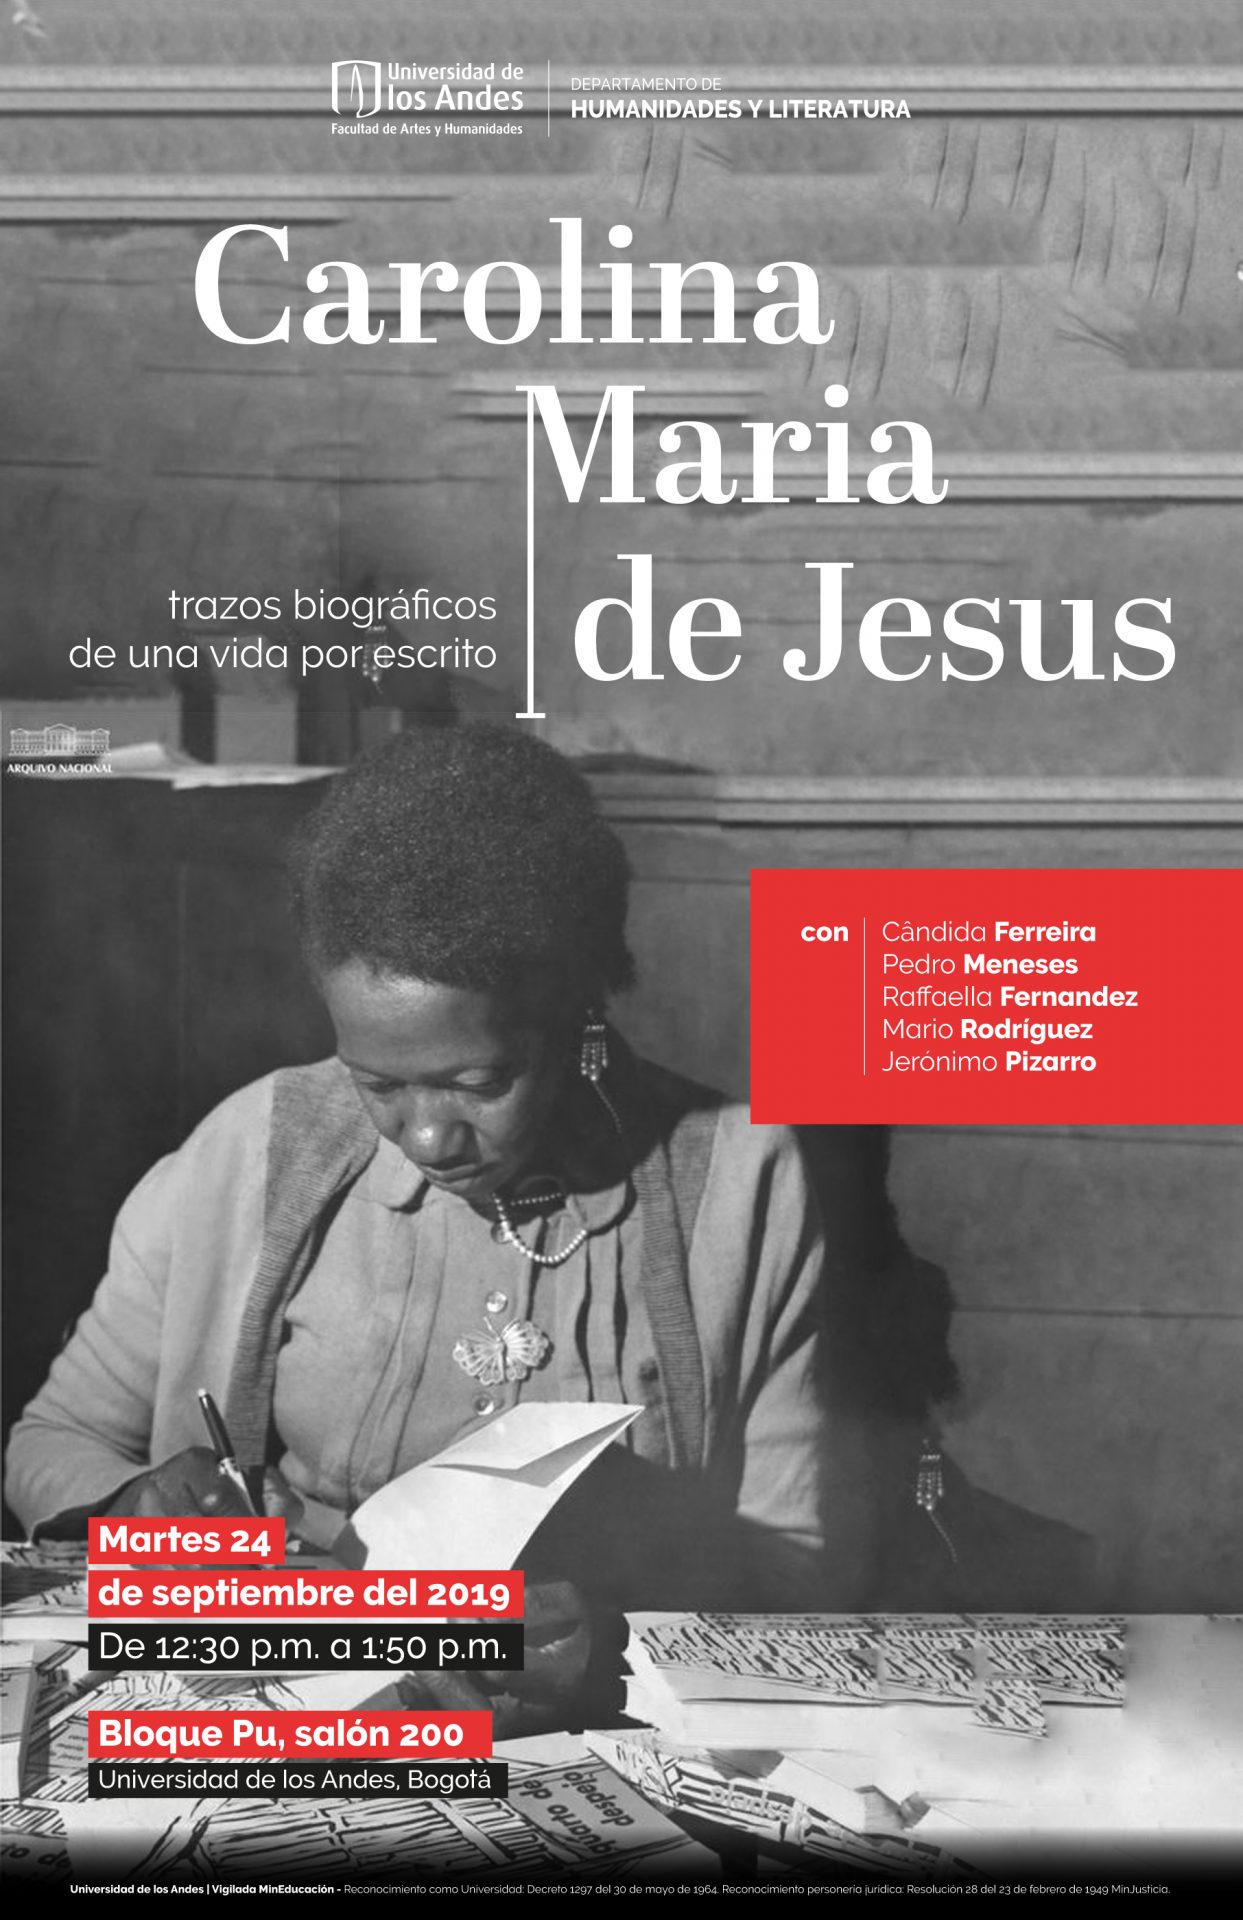 Carolina Maria de Jesus, trazos bibliográficos de una vida por escrito